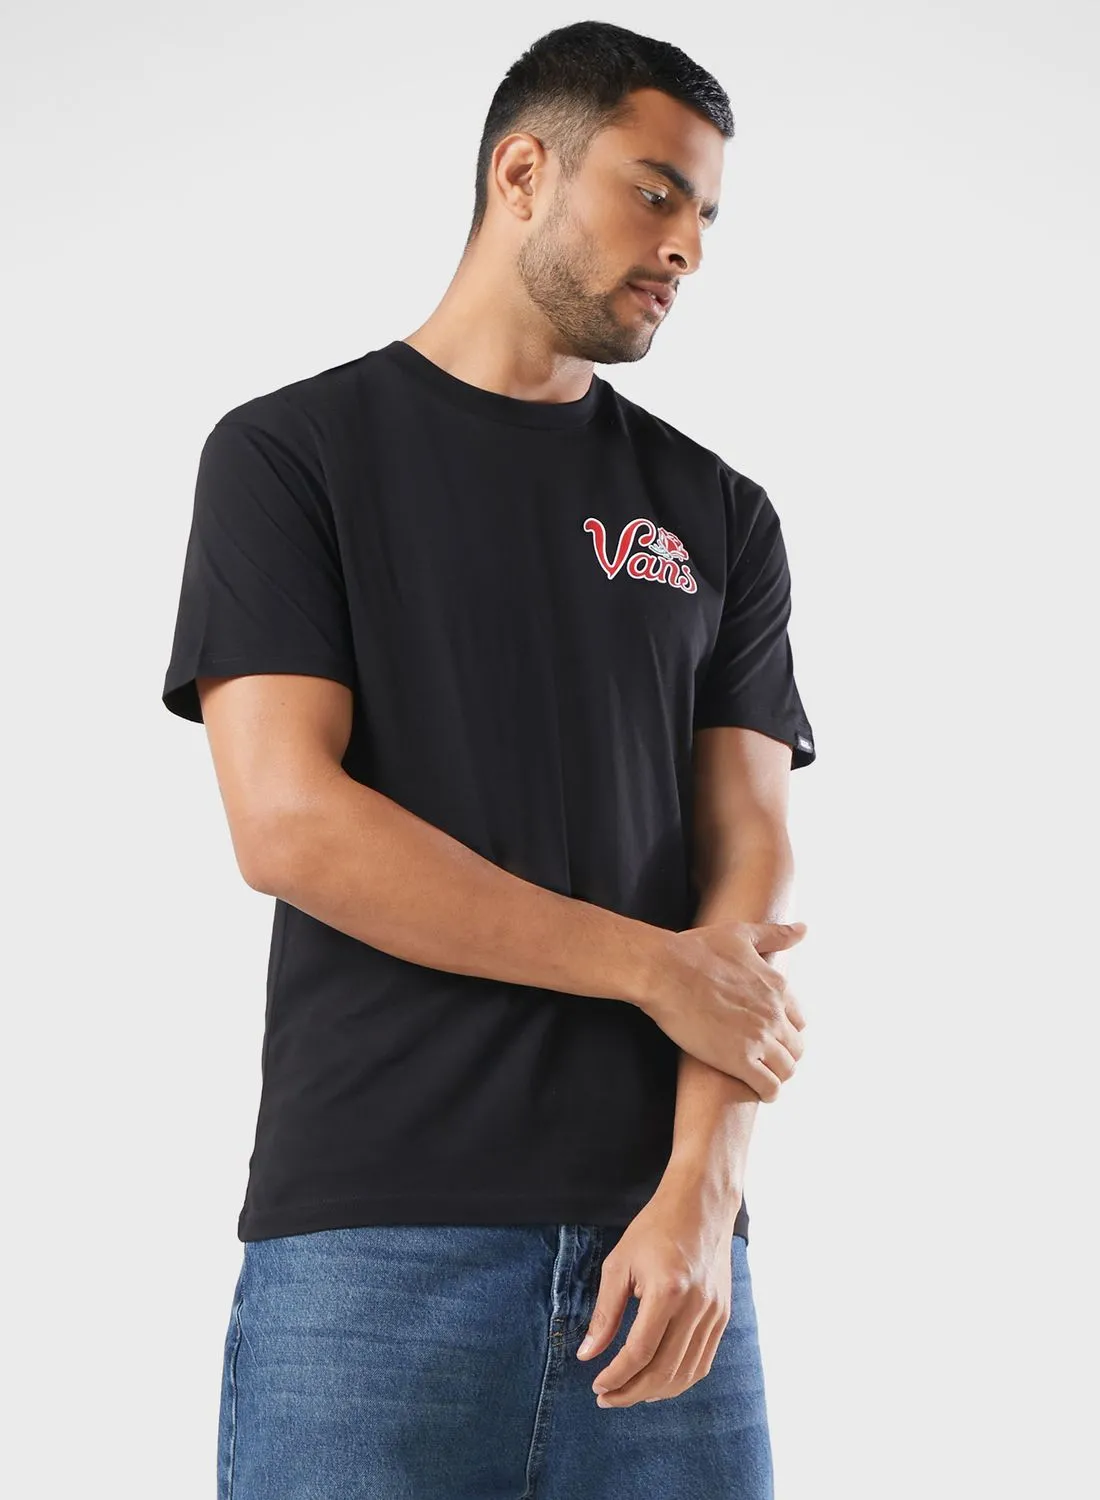 VANS Pasa T-Shirt